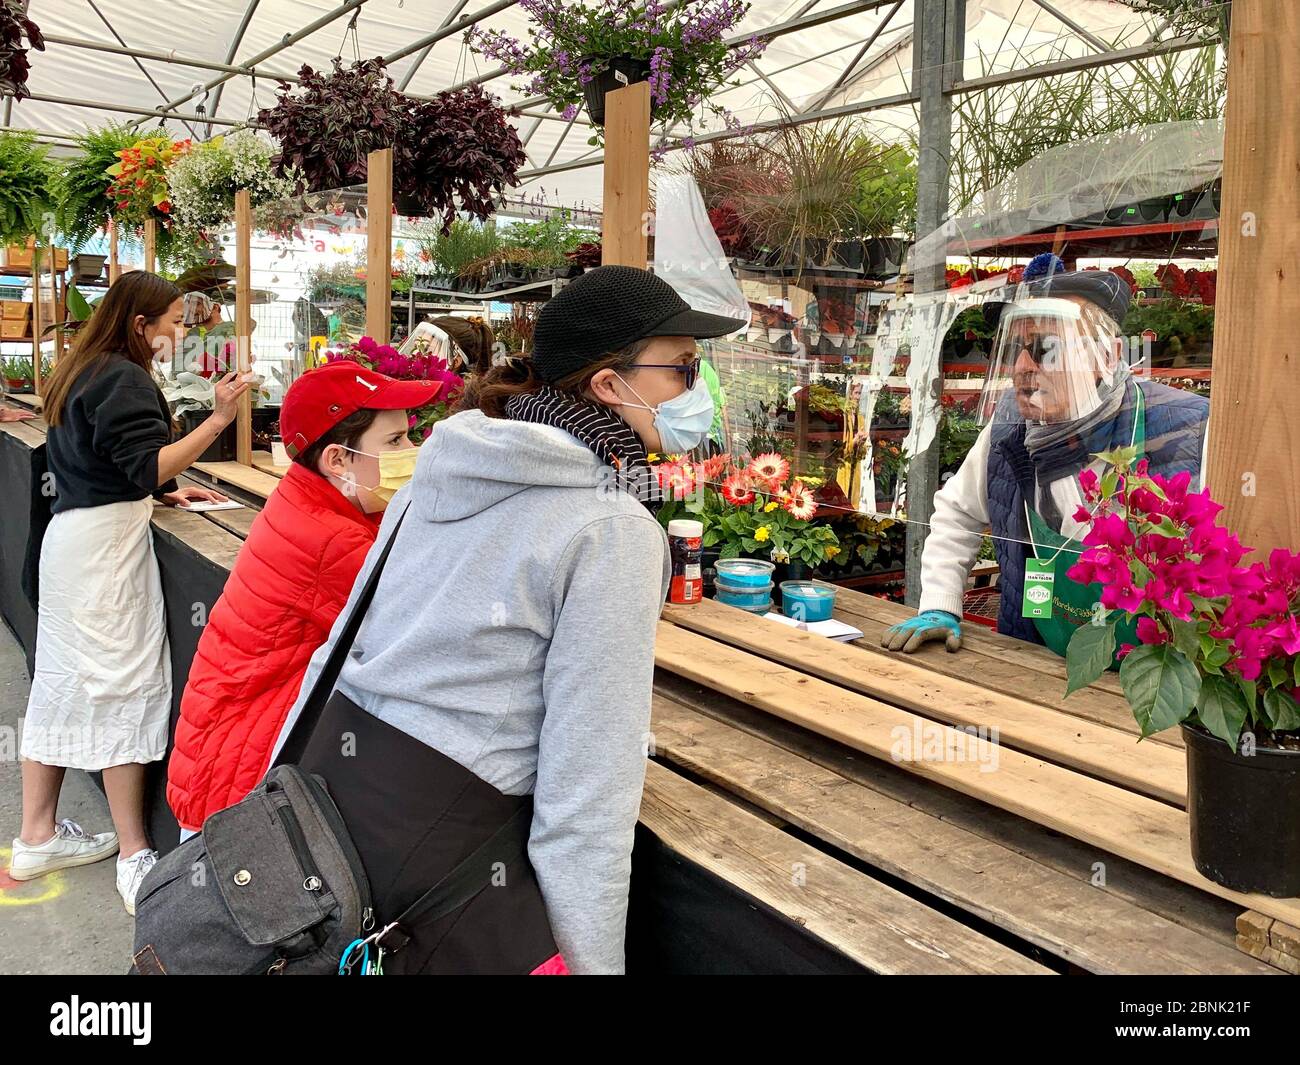 All'arrivo della primavera, la gente acquista fiori durante l'epidemia di Covid19 in corso, Montreal Canada Foto Stock